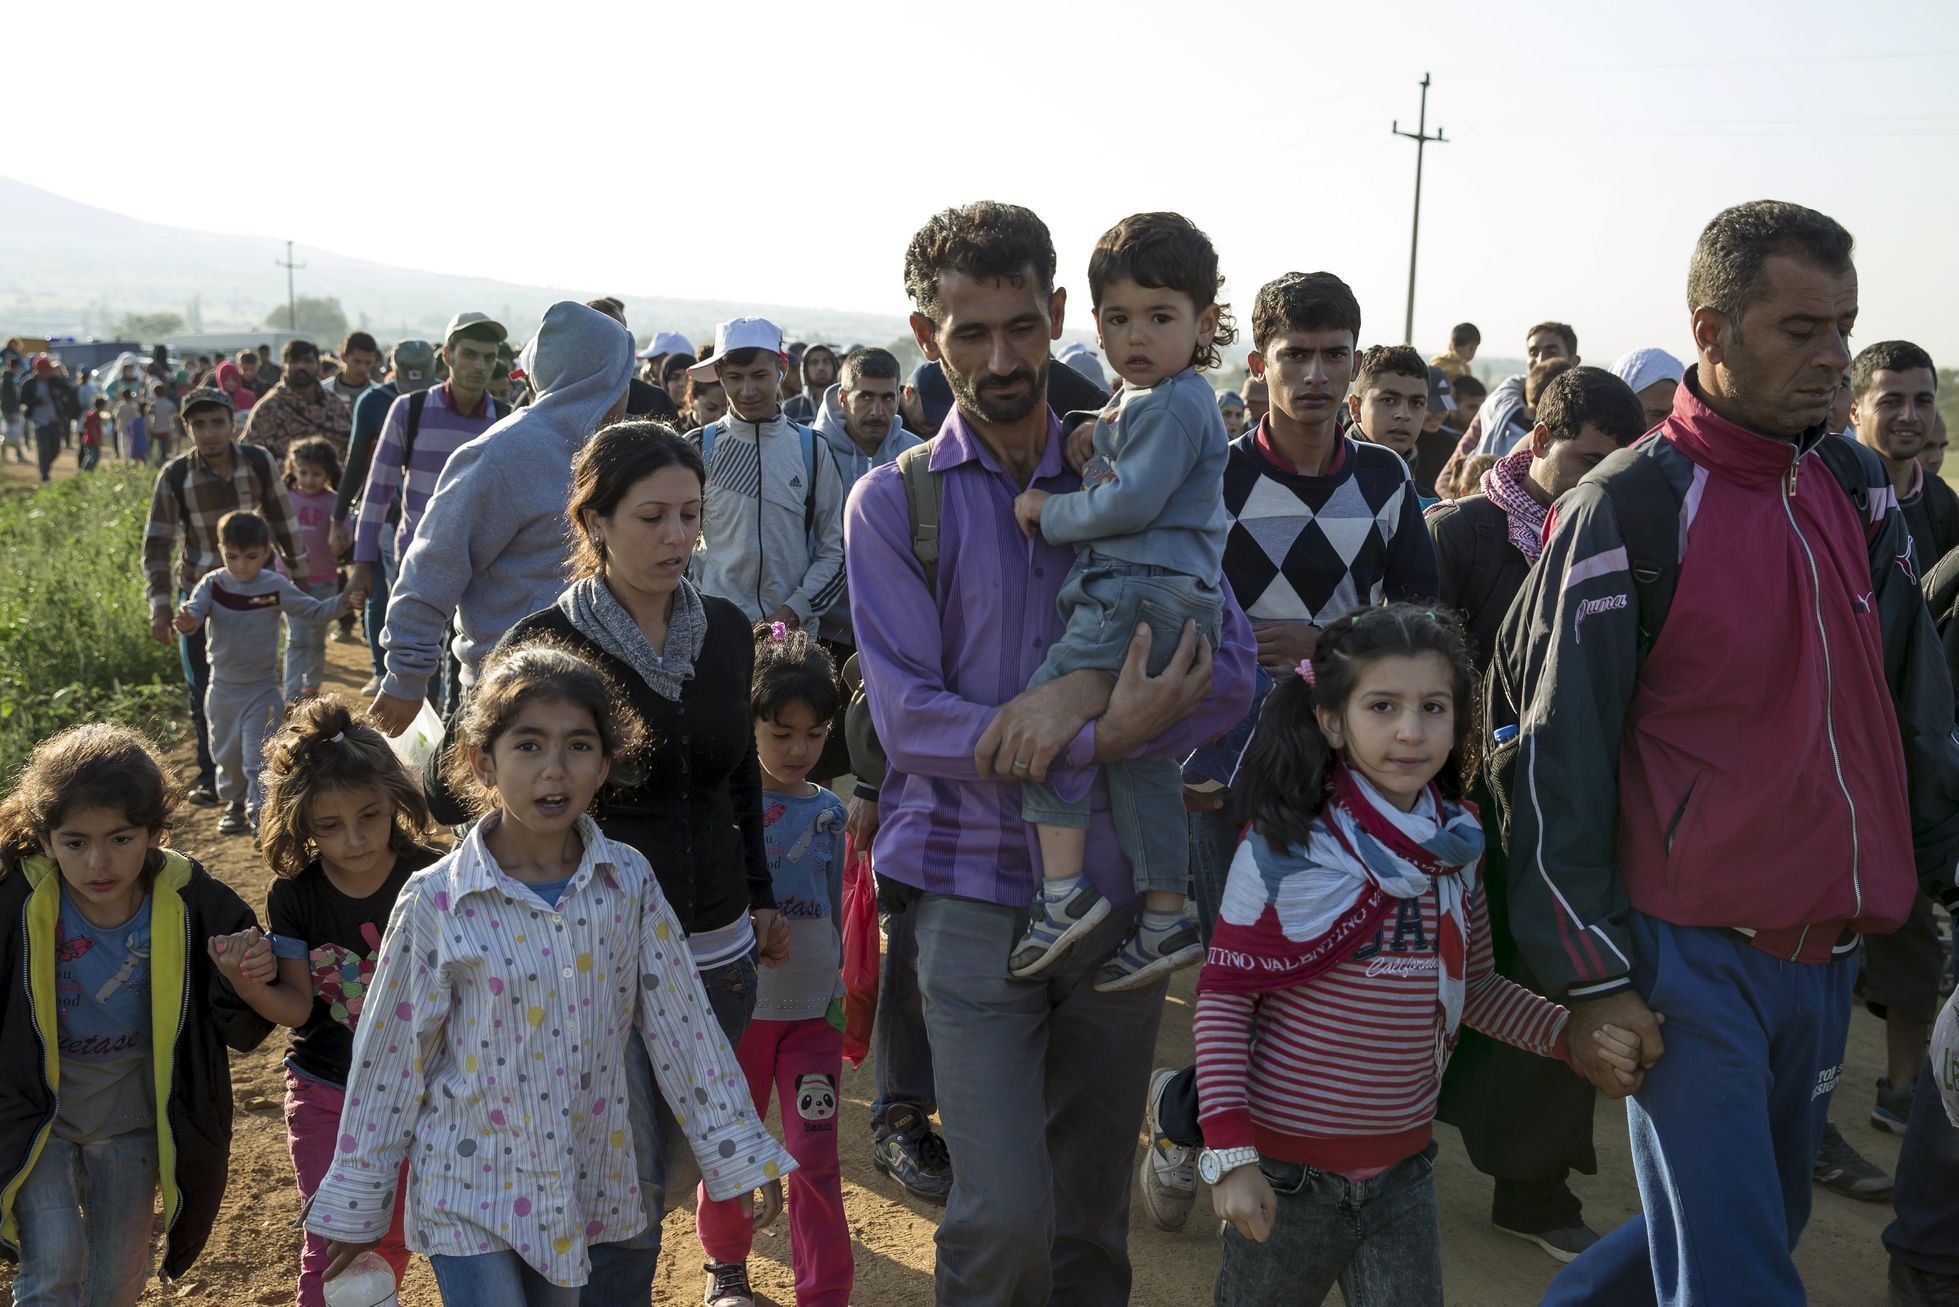 Děti s rodiči uprchlíky na Balkáně